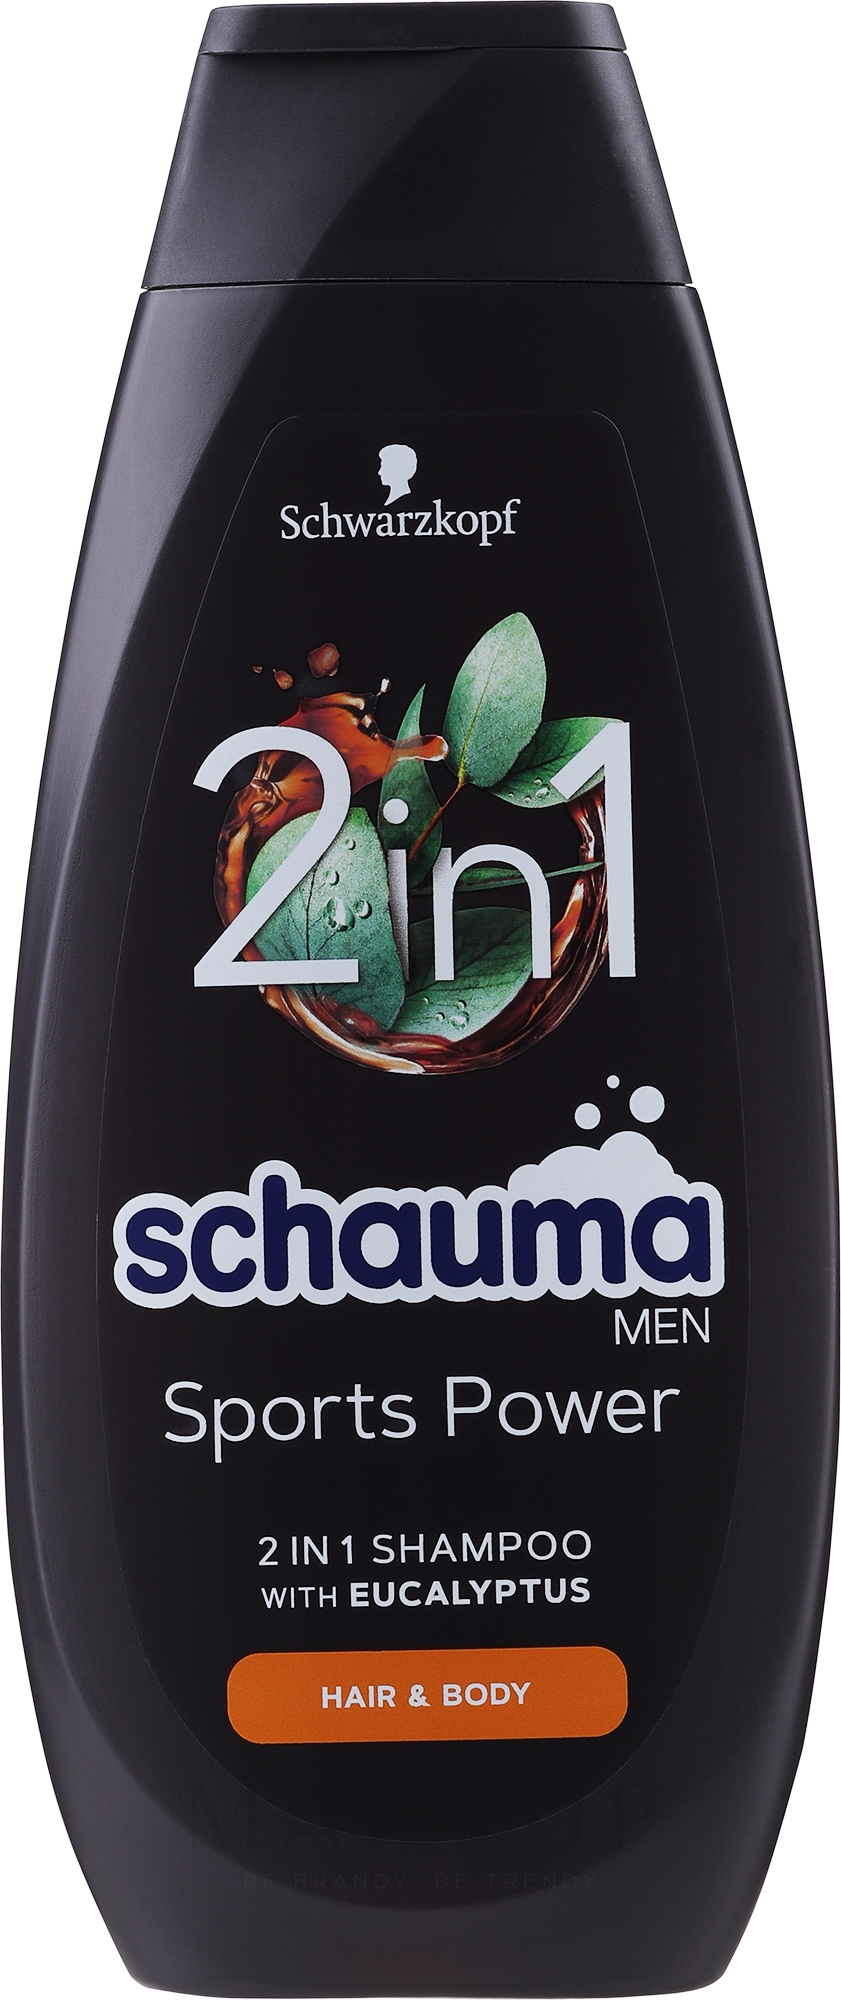 Shampoo für Männer "Sports Power" - Schwarzkopf Schauma Men Shampoo — Foto 400 ml